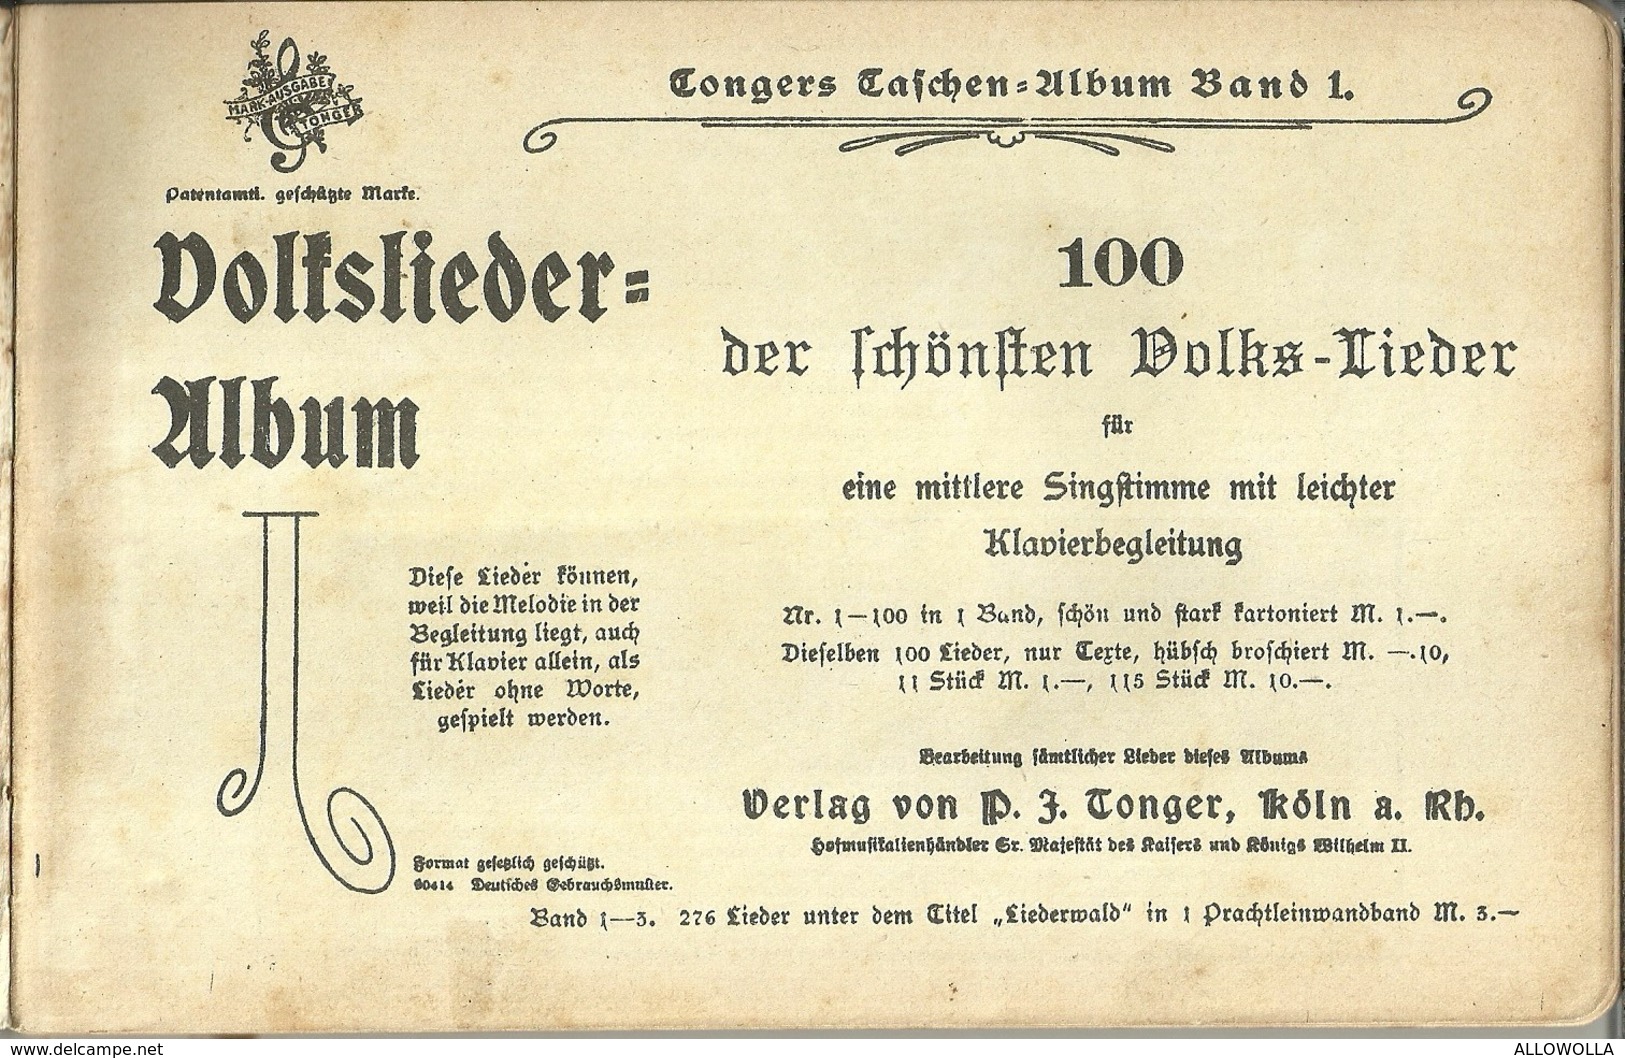 3551 "TONGERS TASCHEN ALBUM Bd. 1-100 VOLKS LIEDER - 1913" 188 PAGINE- ORIGINALE - Musique